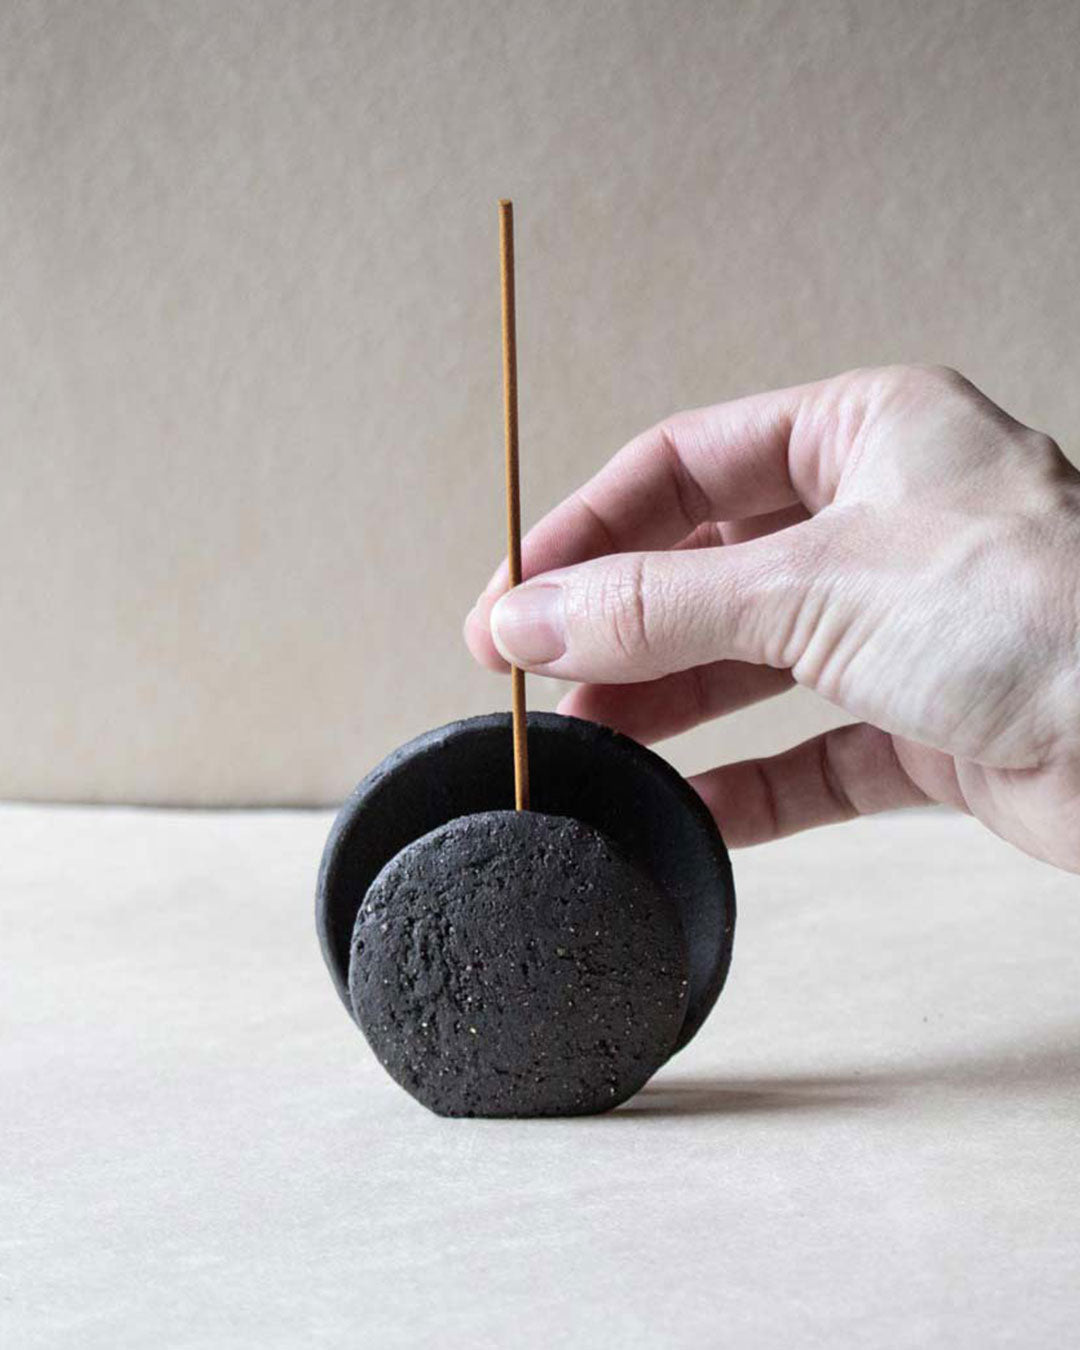 Nomad Luna - New moon incense burner ceramics Claire Lune